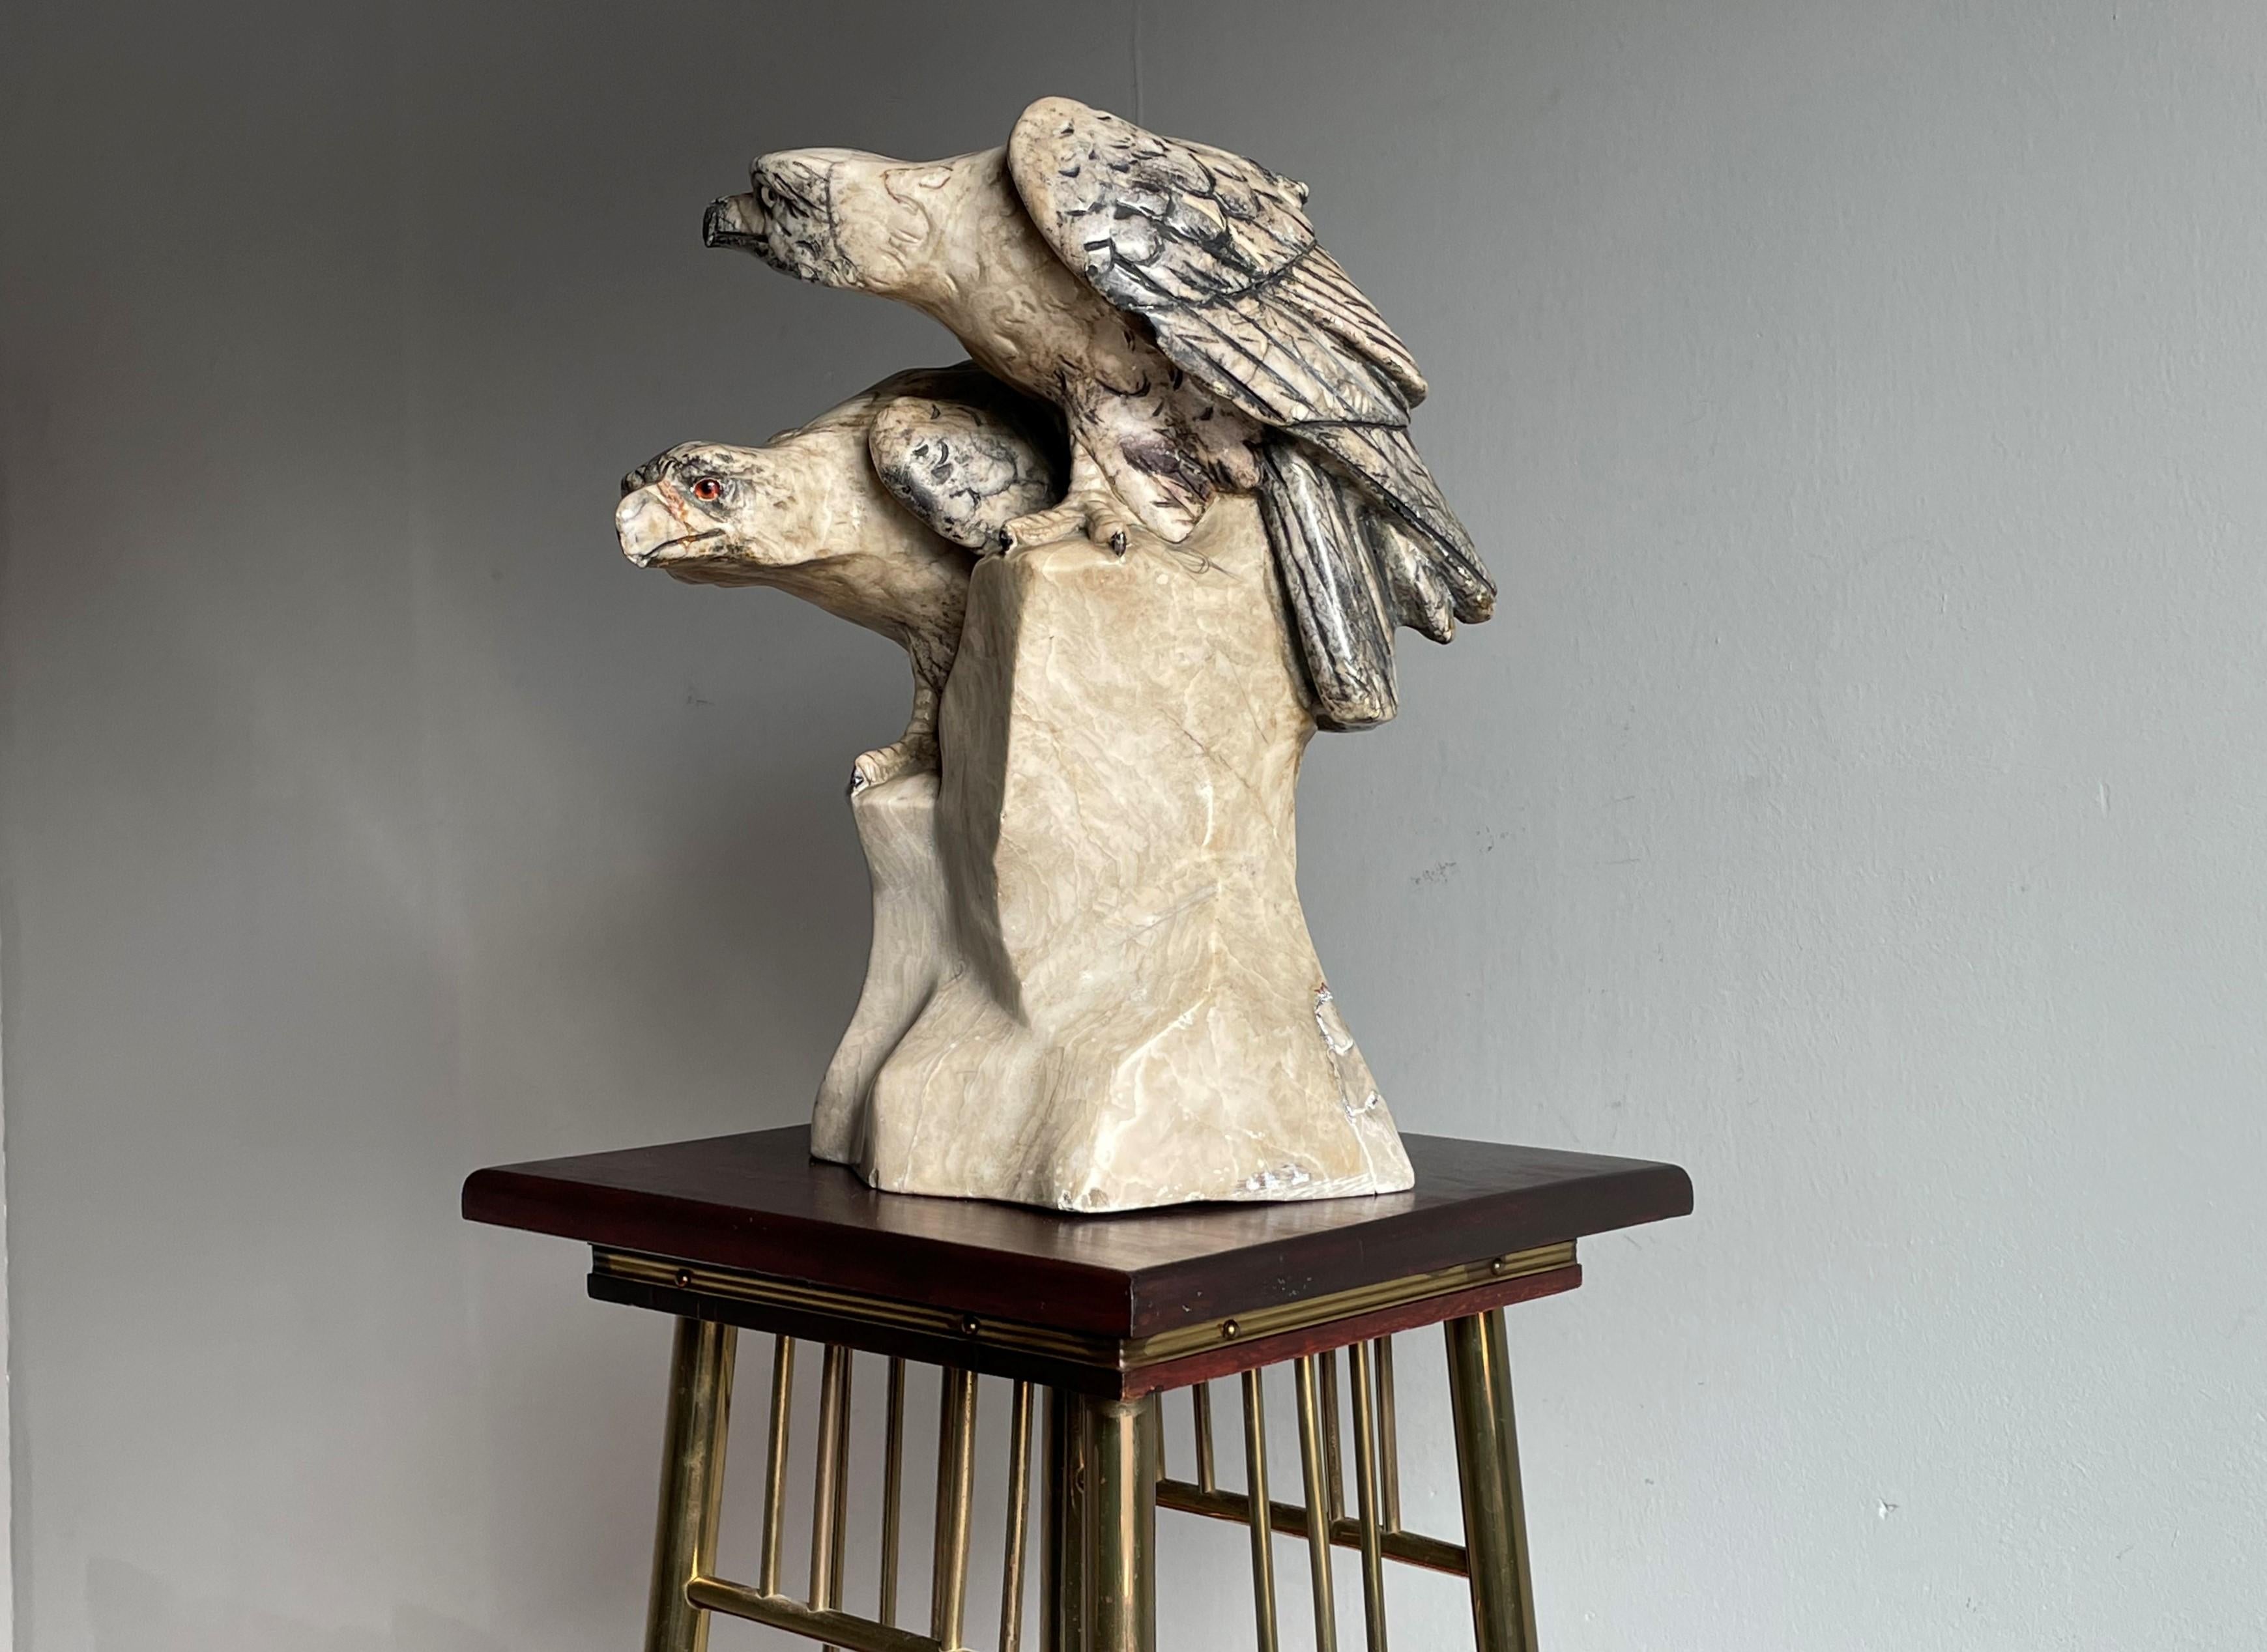 Prächtige und sehr seltene antike Skulptur, die zwei Adler darstellt.

Die meisten Menschen sind nicht in der Lage, ein Bild von einem Adler zu zeichnen. Der Künstler, der diese Skulptur geschaffen hat, hat nicht nur einen, sondern gleich zwei